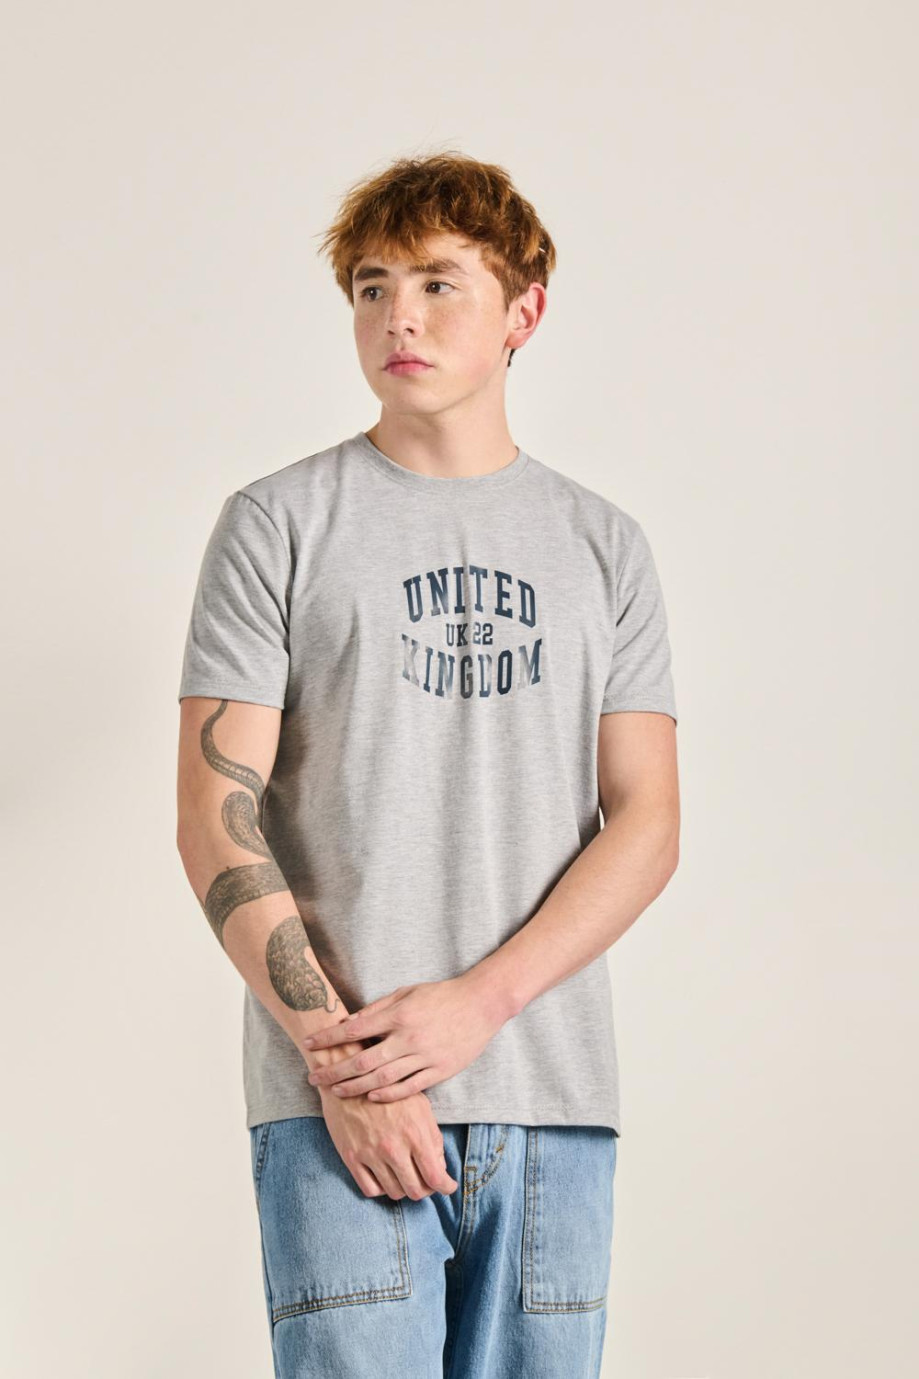 Camiseta cuello redondo unicolor con texto college delantero